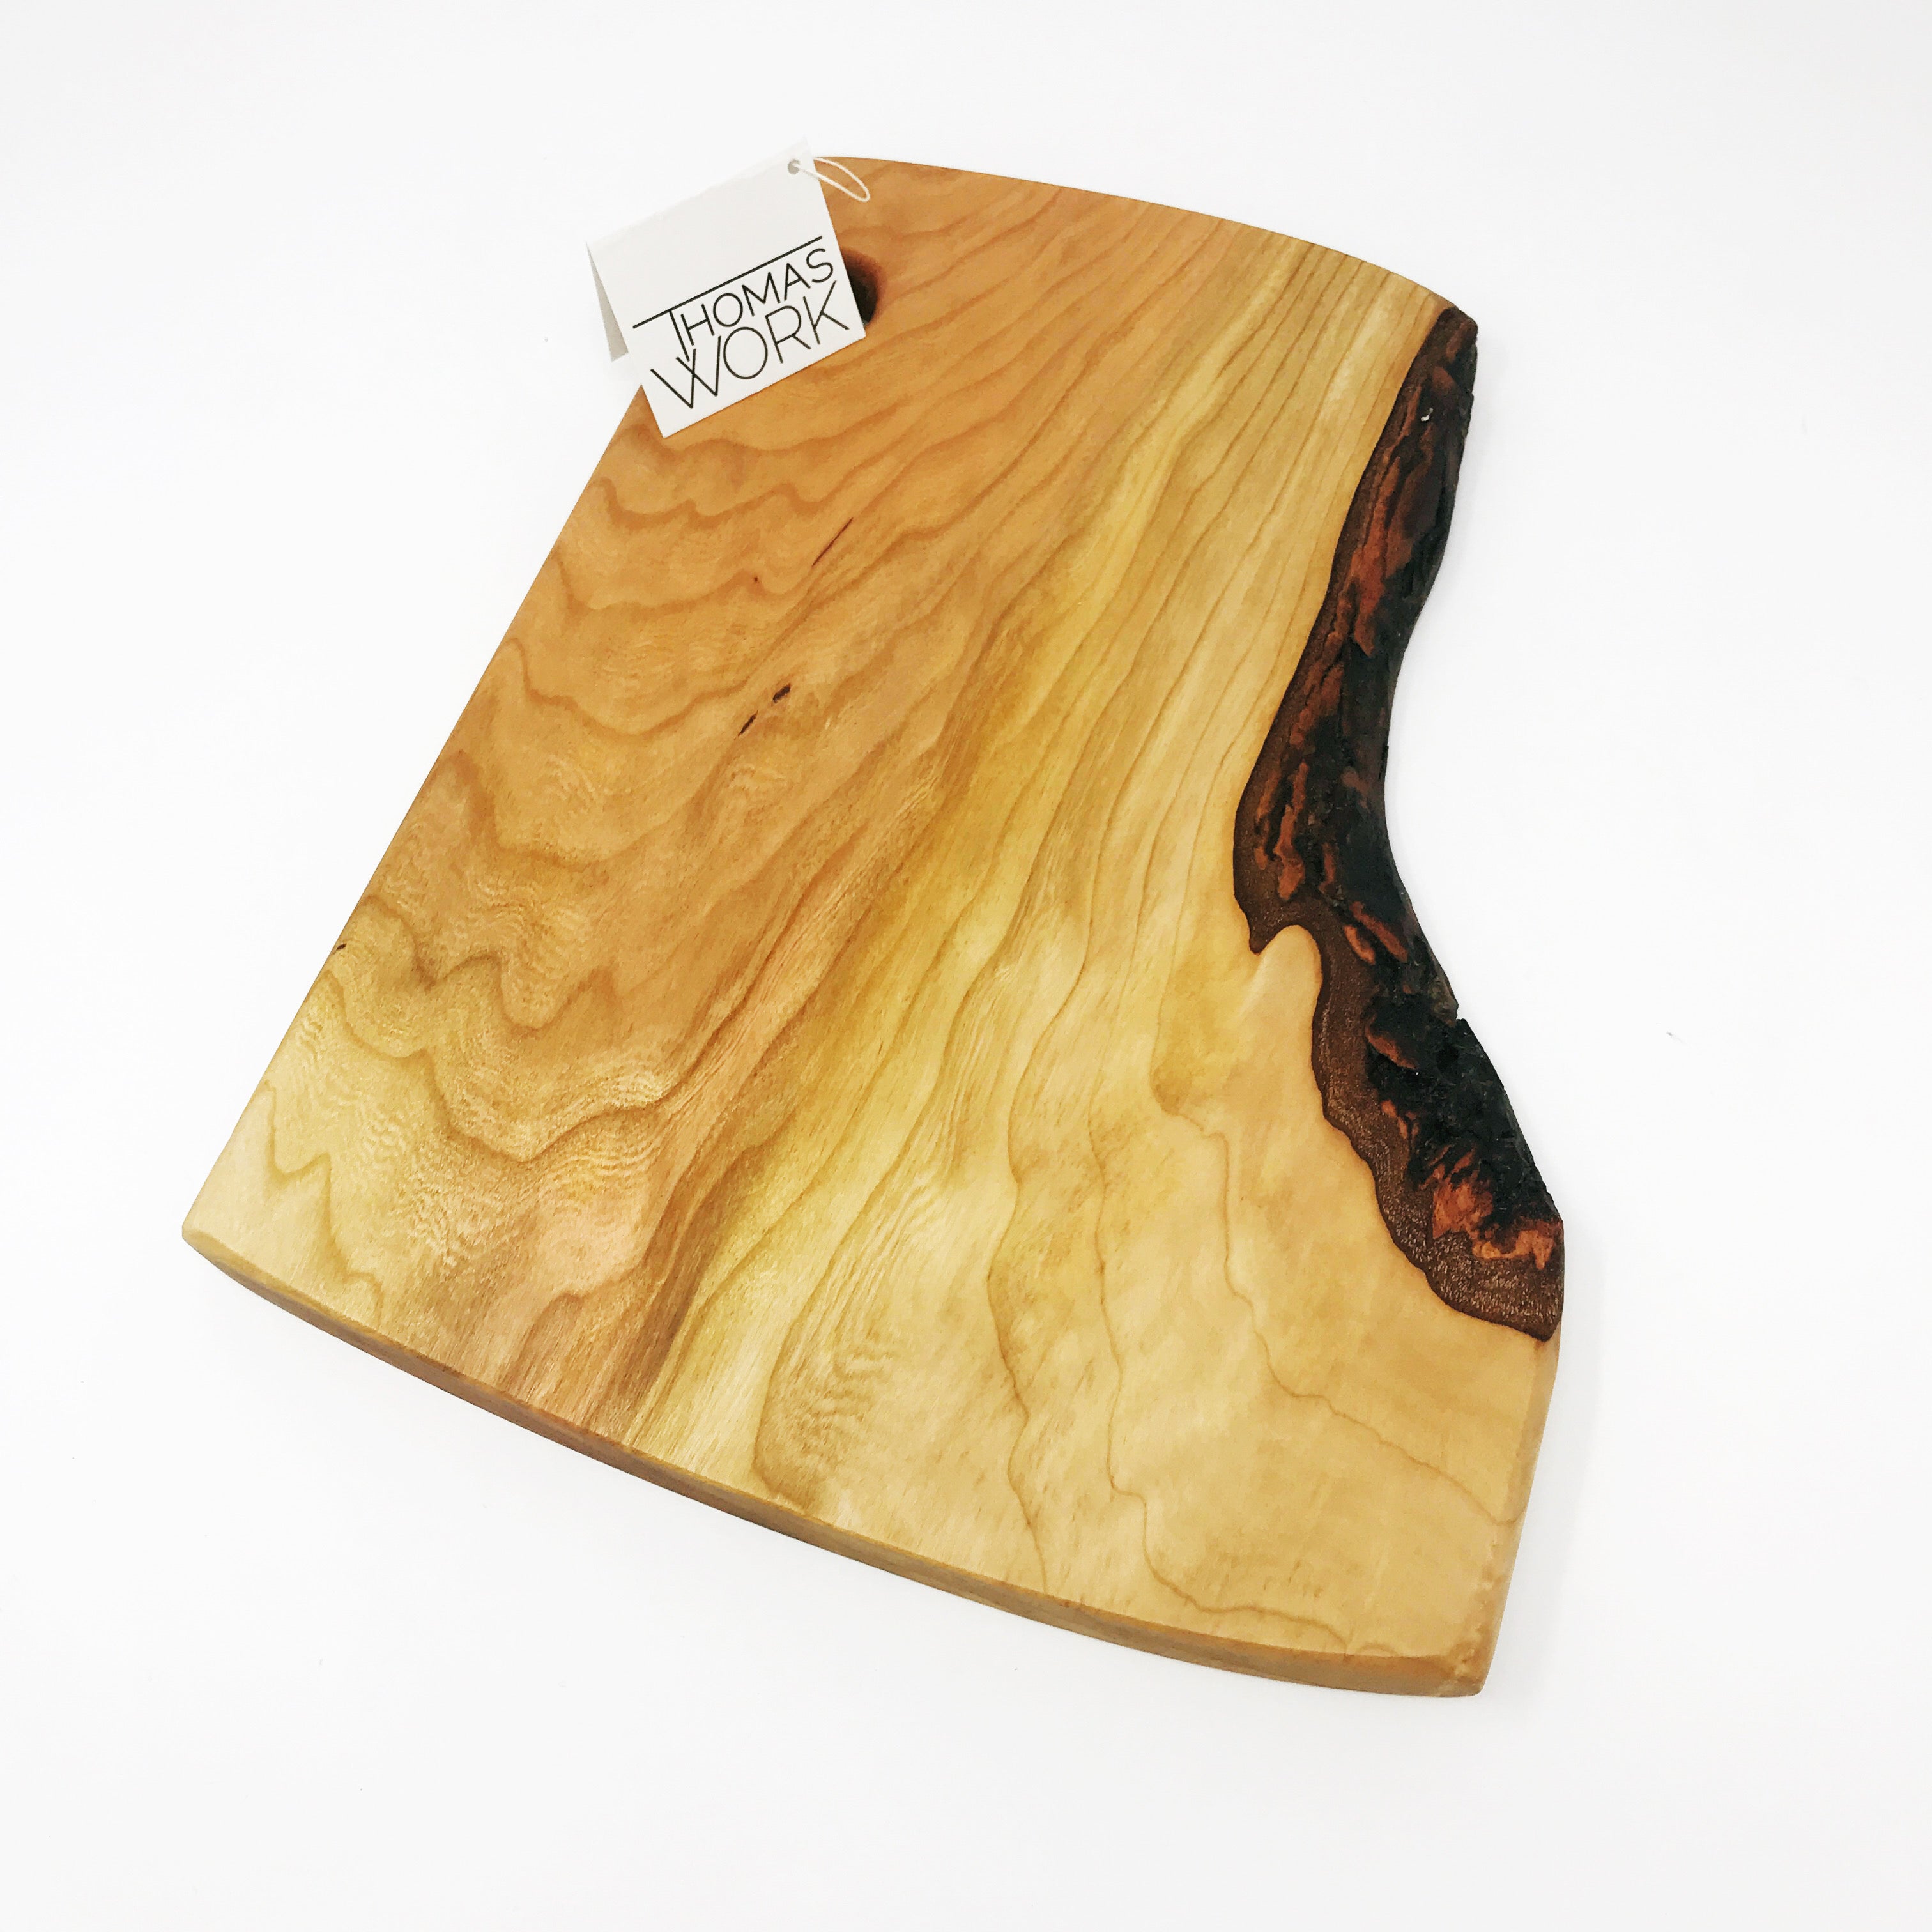 wood serving board